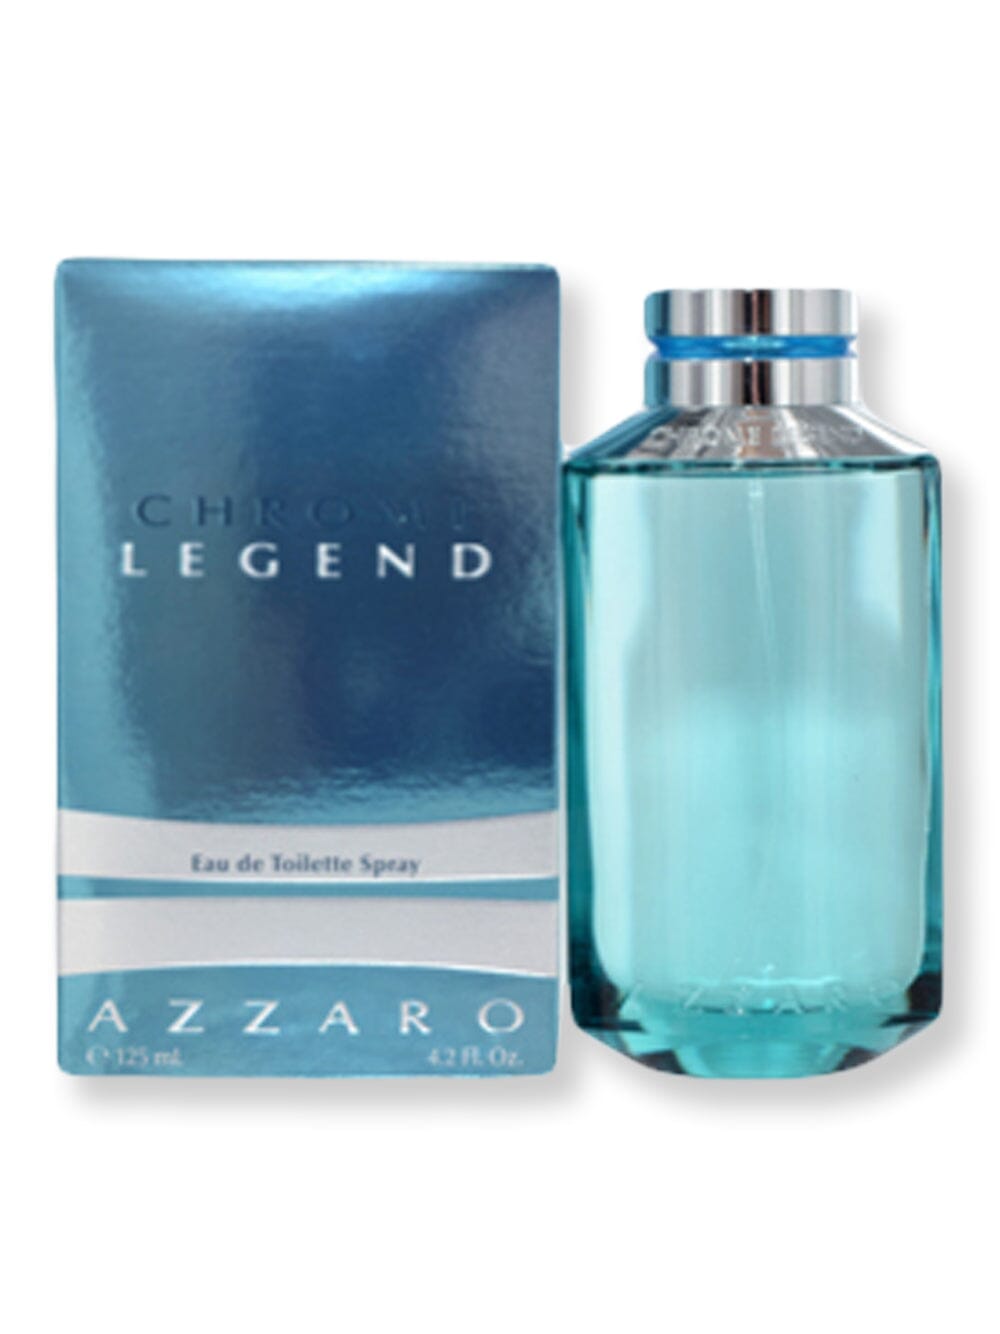 Azzaro Azzaro Chrome Legend EDT Spray 4.2 oz Perfume 